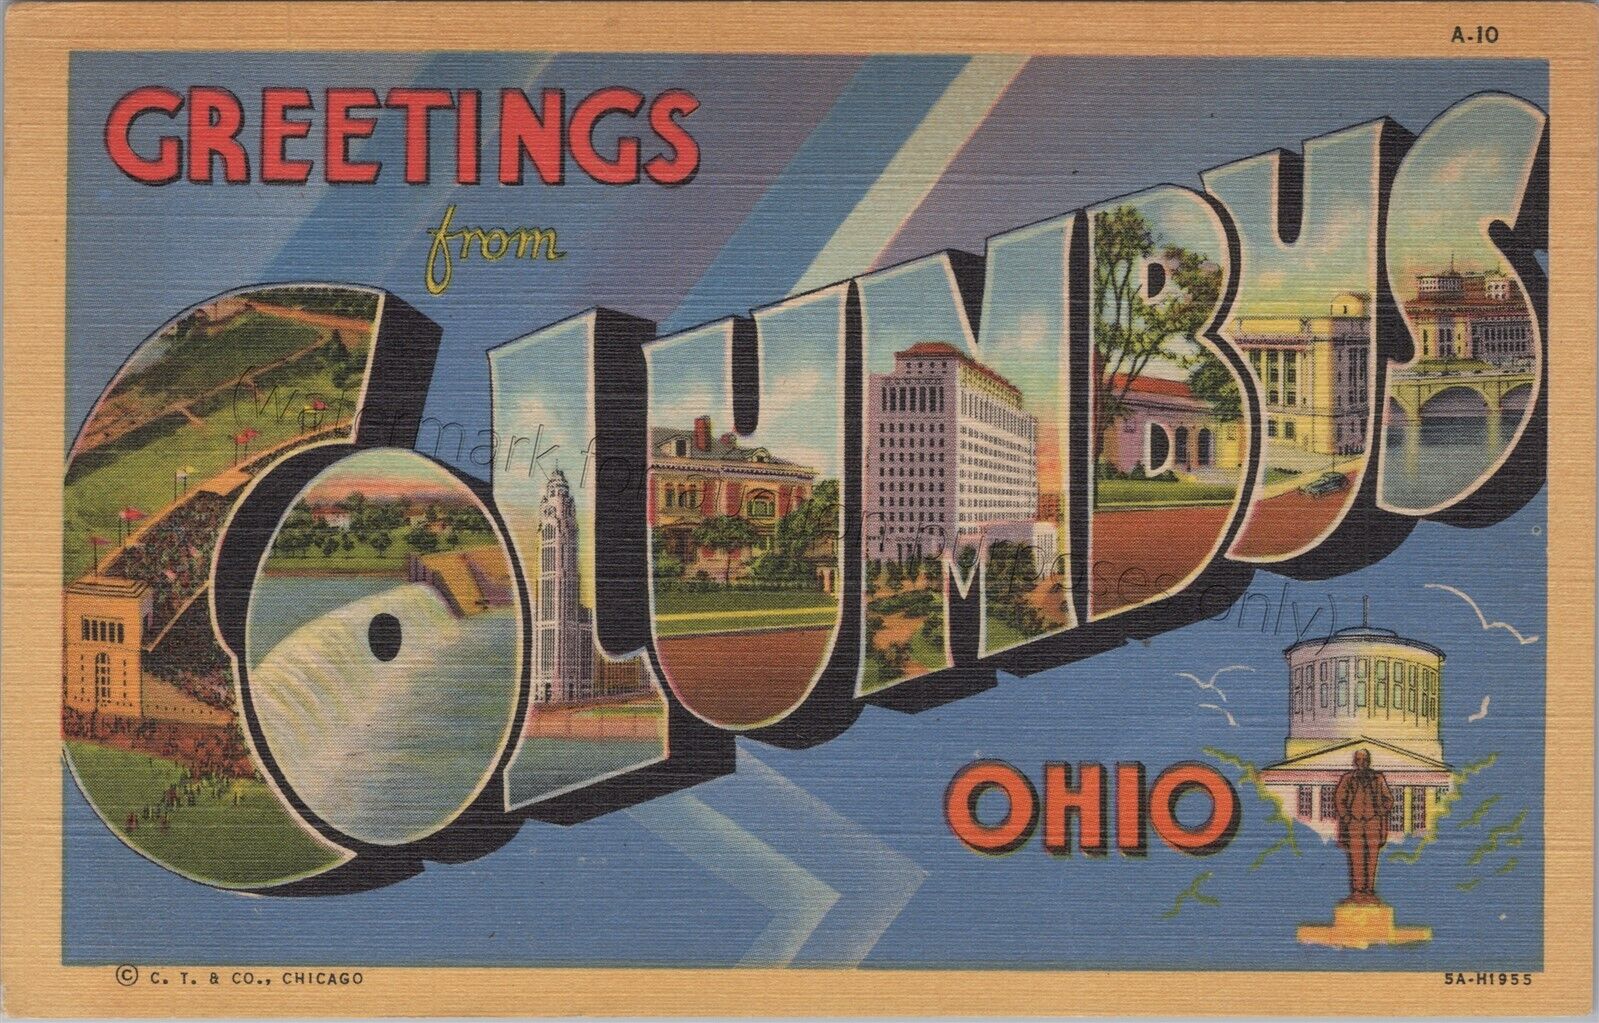 Columbus, OH: Large Letter *unused* vintage Ohio linen postcard Curt Teich